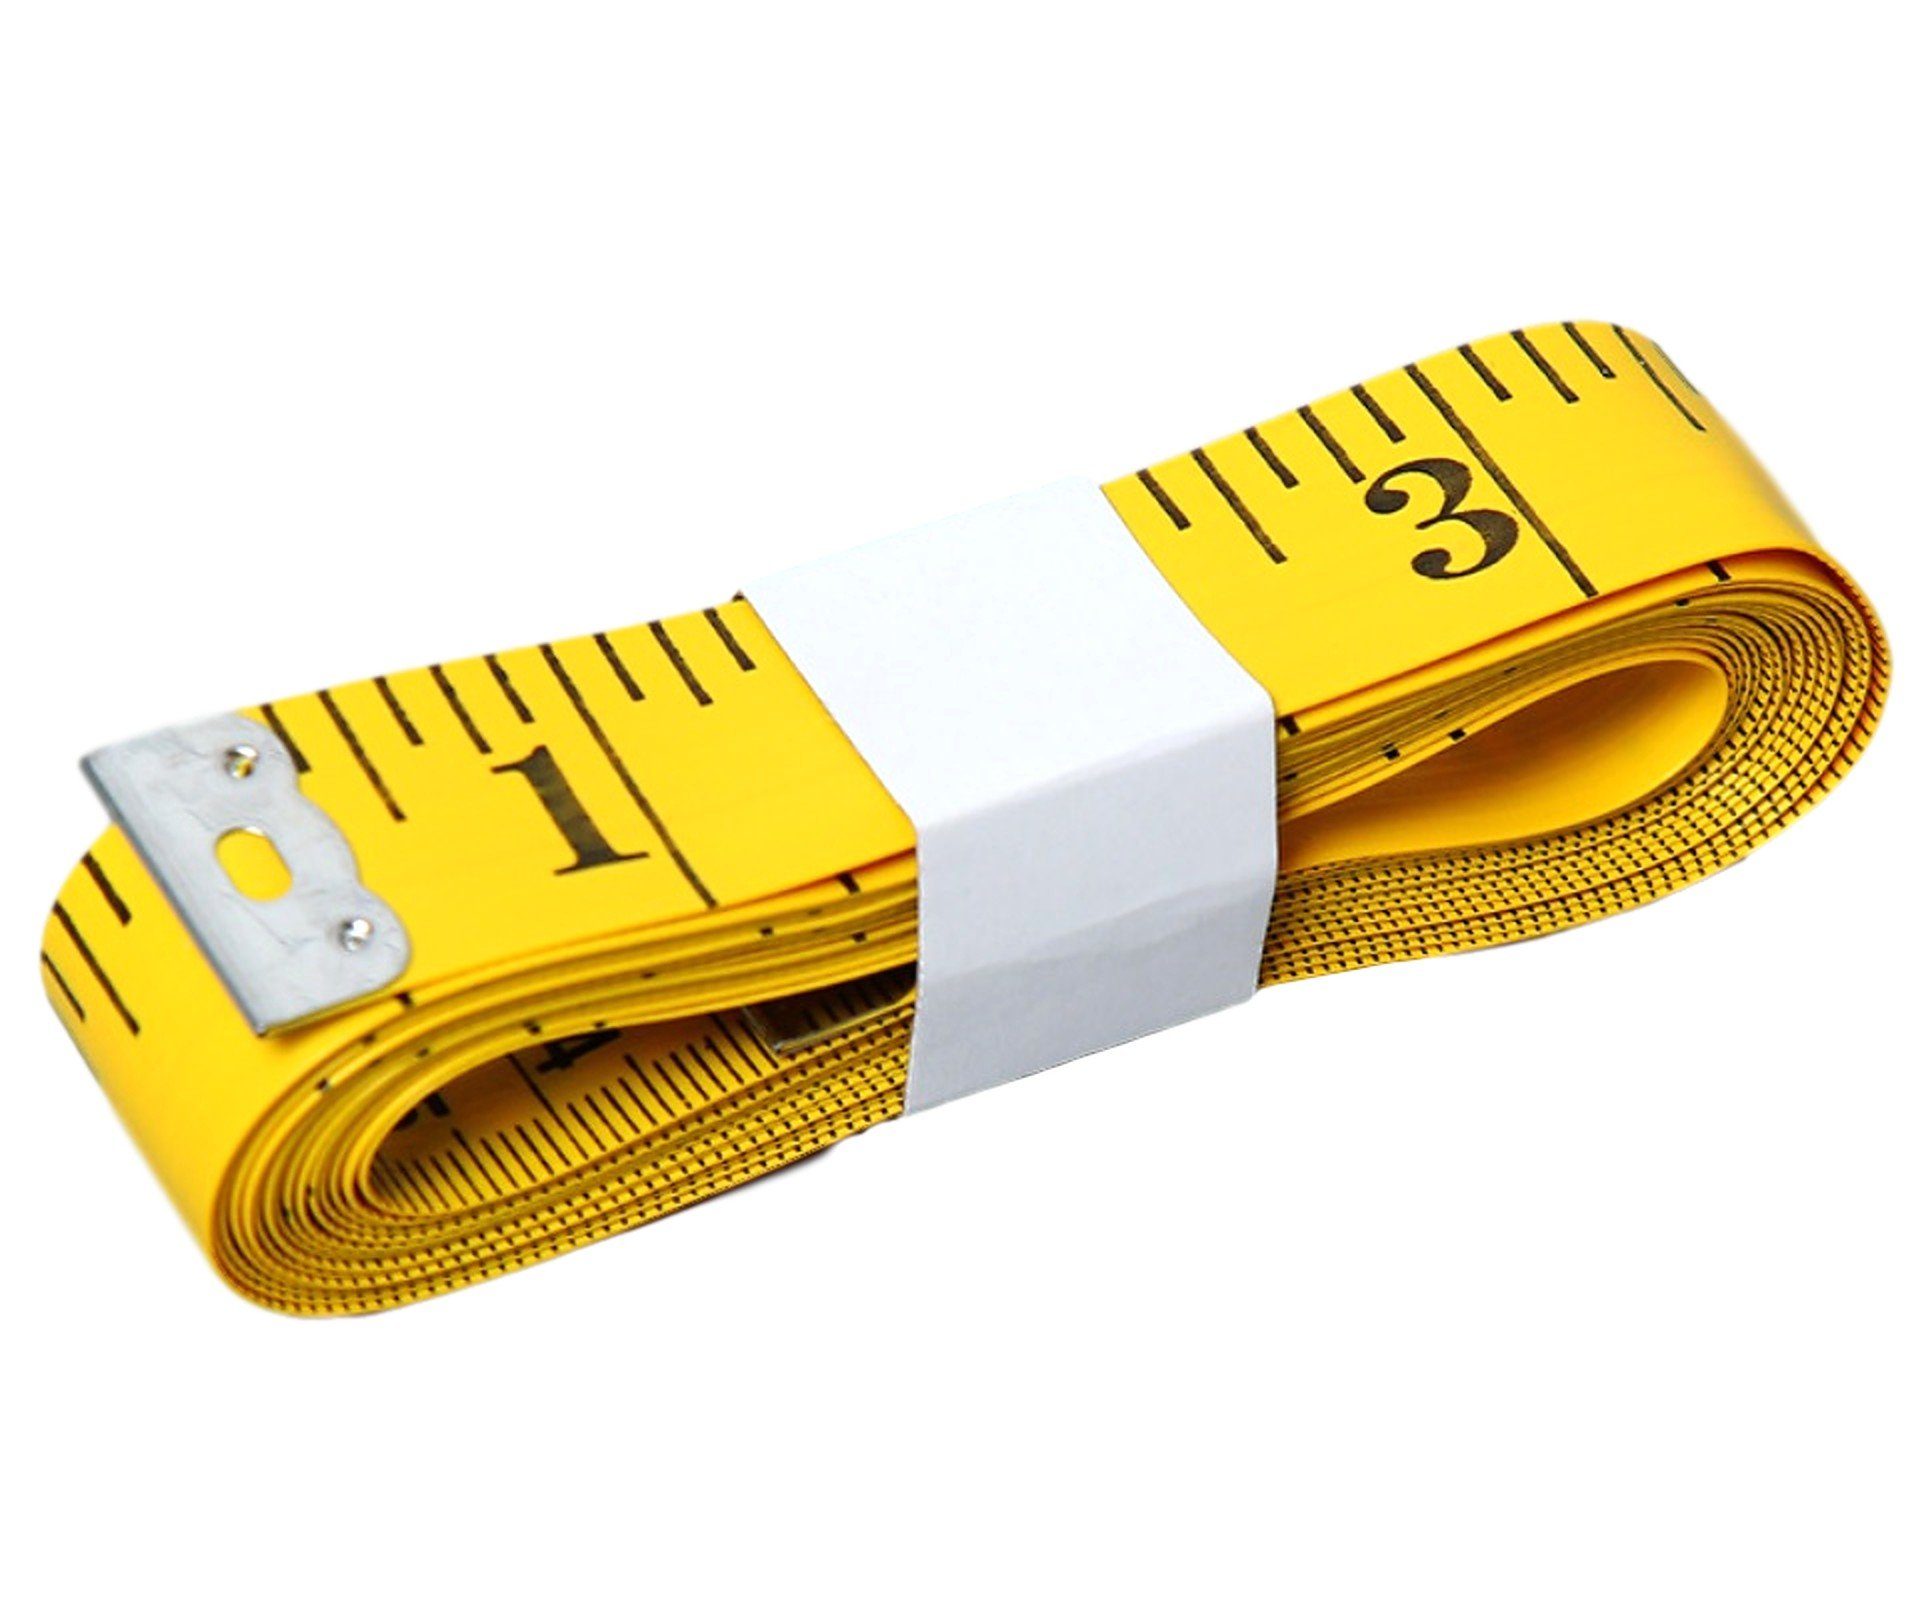 Nähen Schneidermaßband zum messen, 3m oder BAYLI flexibles Körperumfang Maßband